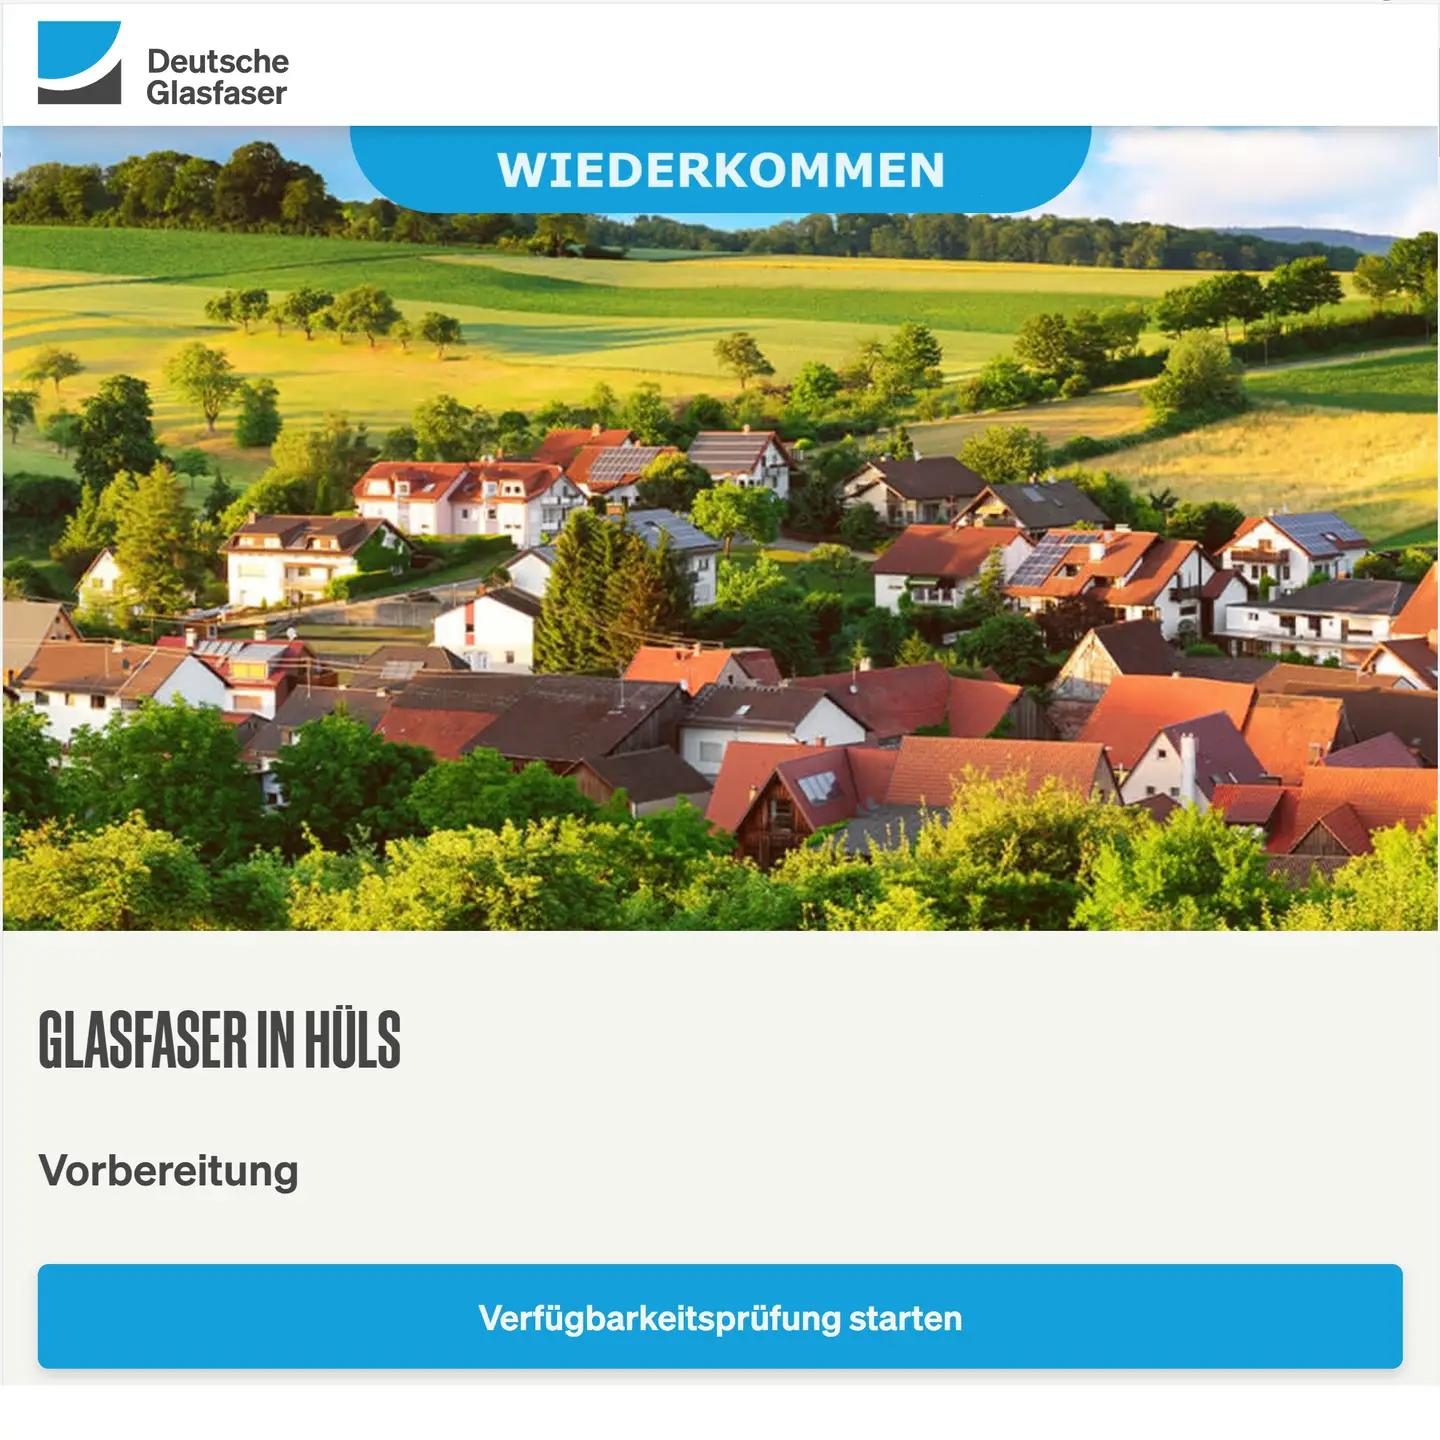 Screenshot von "Deutsche Glasfaser", oben DG Logo, ein Landschaftsbild, Schriftzüge "Glasfaser in Krefeld-Hüls", Vorbereitung des Projekts